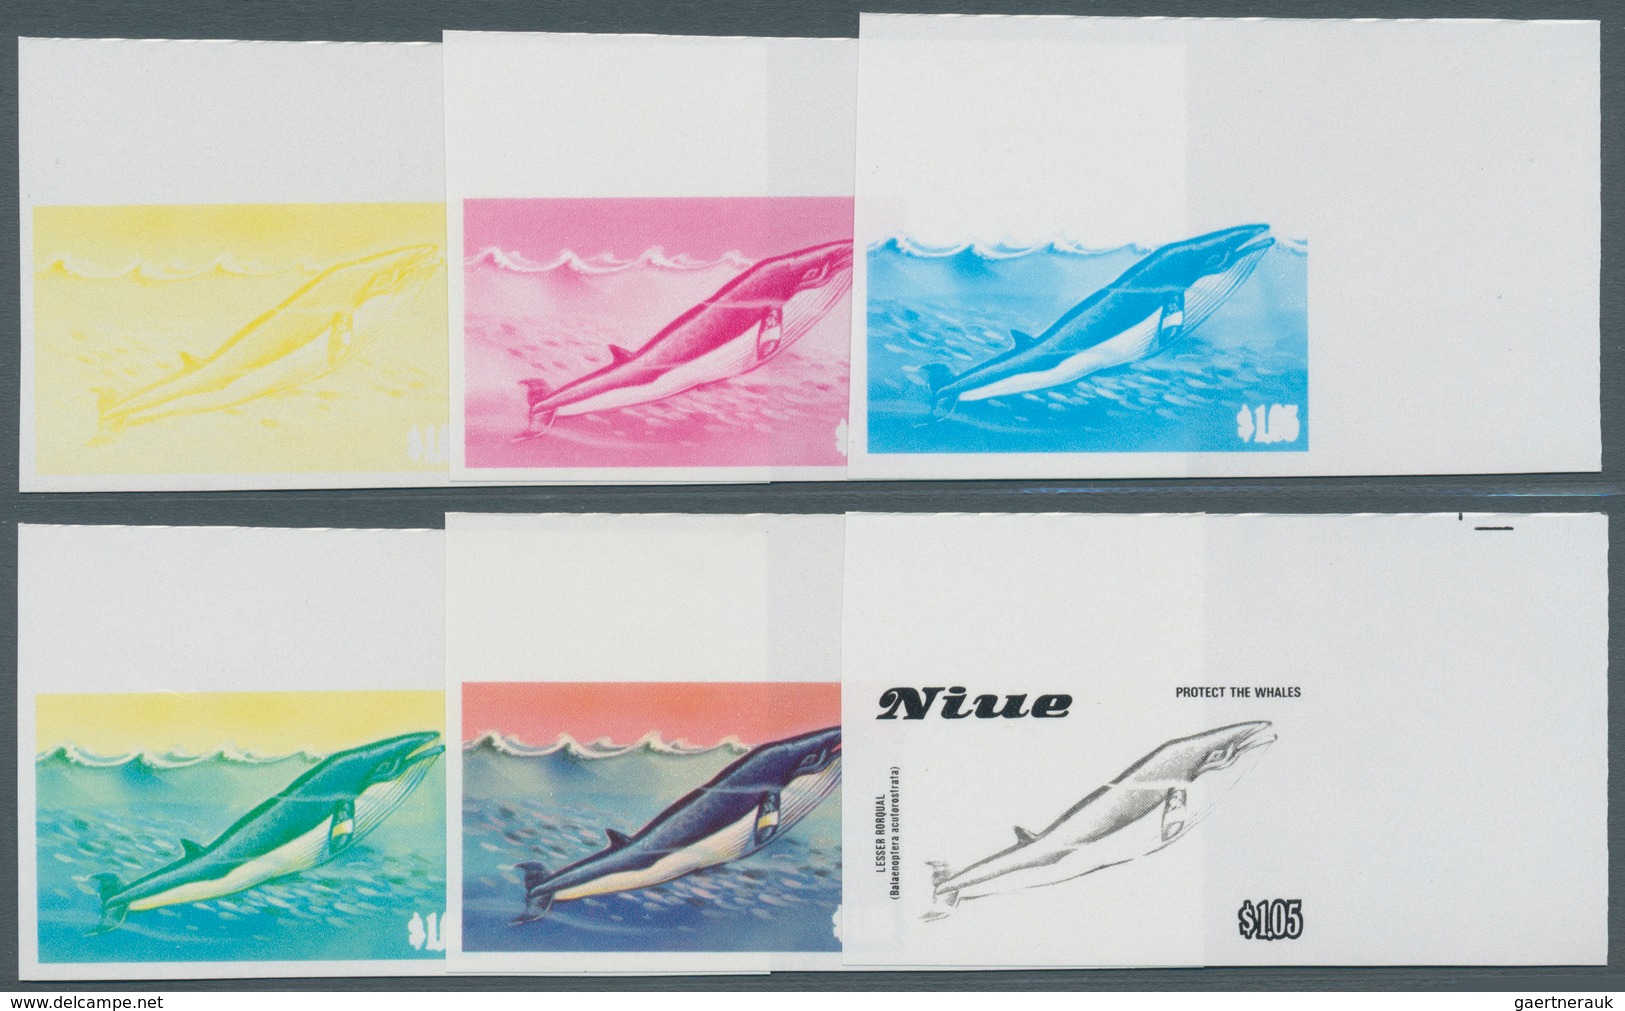 Niue: 1977/90, Sammlung von 3.787 PHASENDRUCKEN nur verschiedener und kompletter Ausgaben, dabei vie